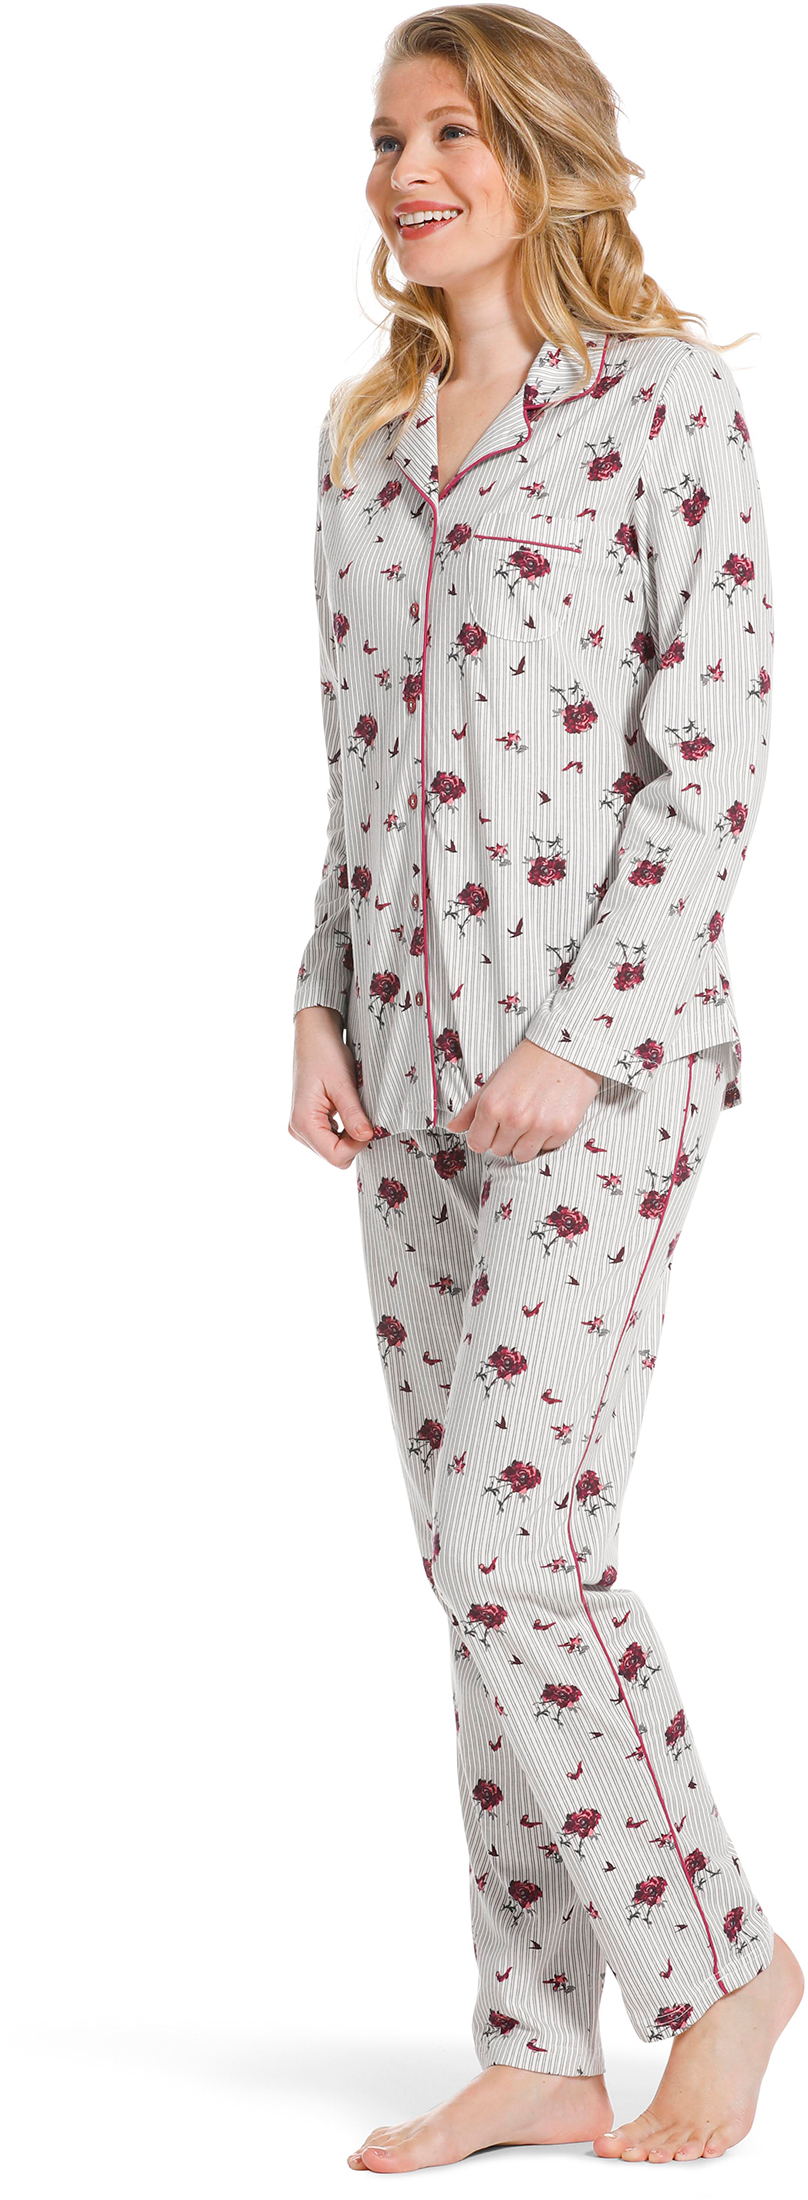 Pastunette doorknoop dames pyjama 20222-156-6 - Grijs - 52